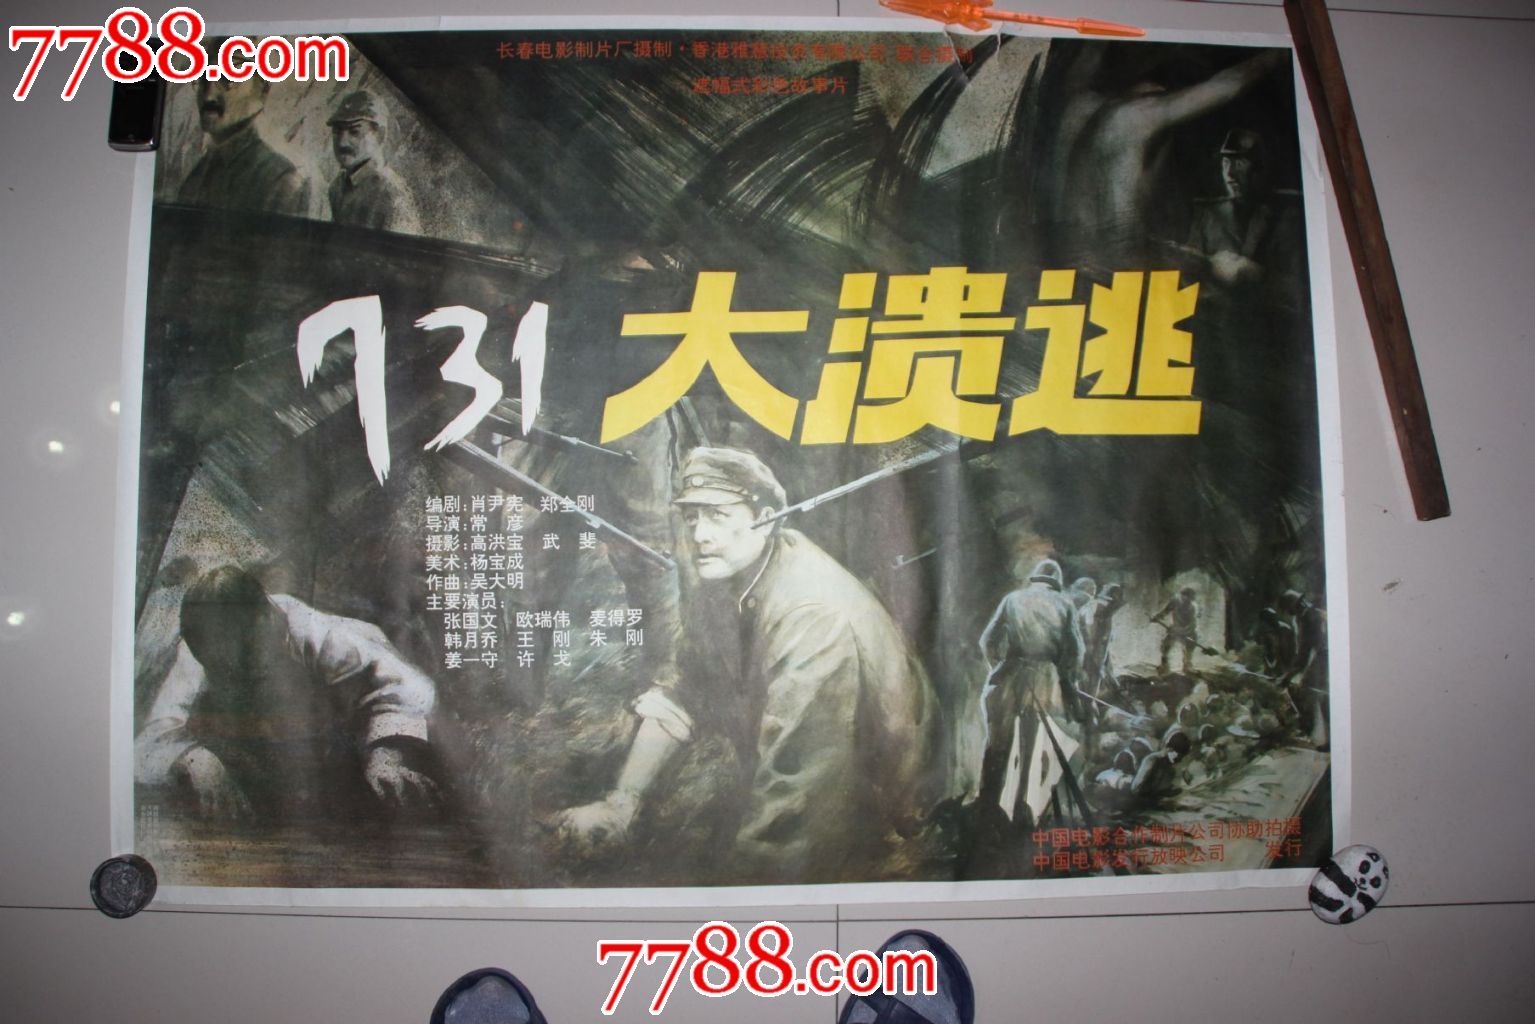 731大溃逃,电影海报,绘画与摄影稿混合印刷,其